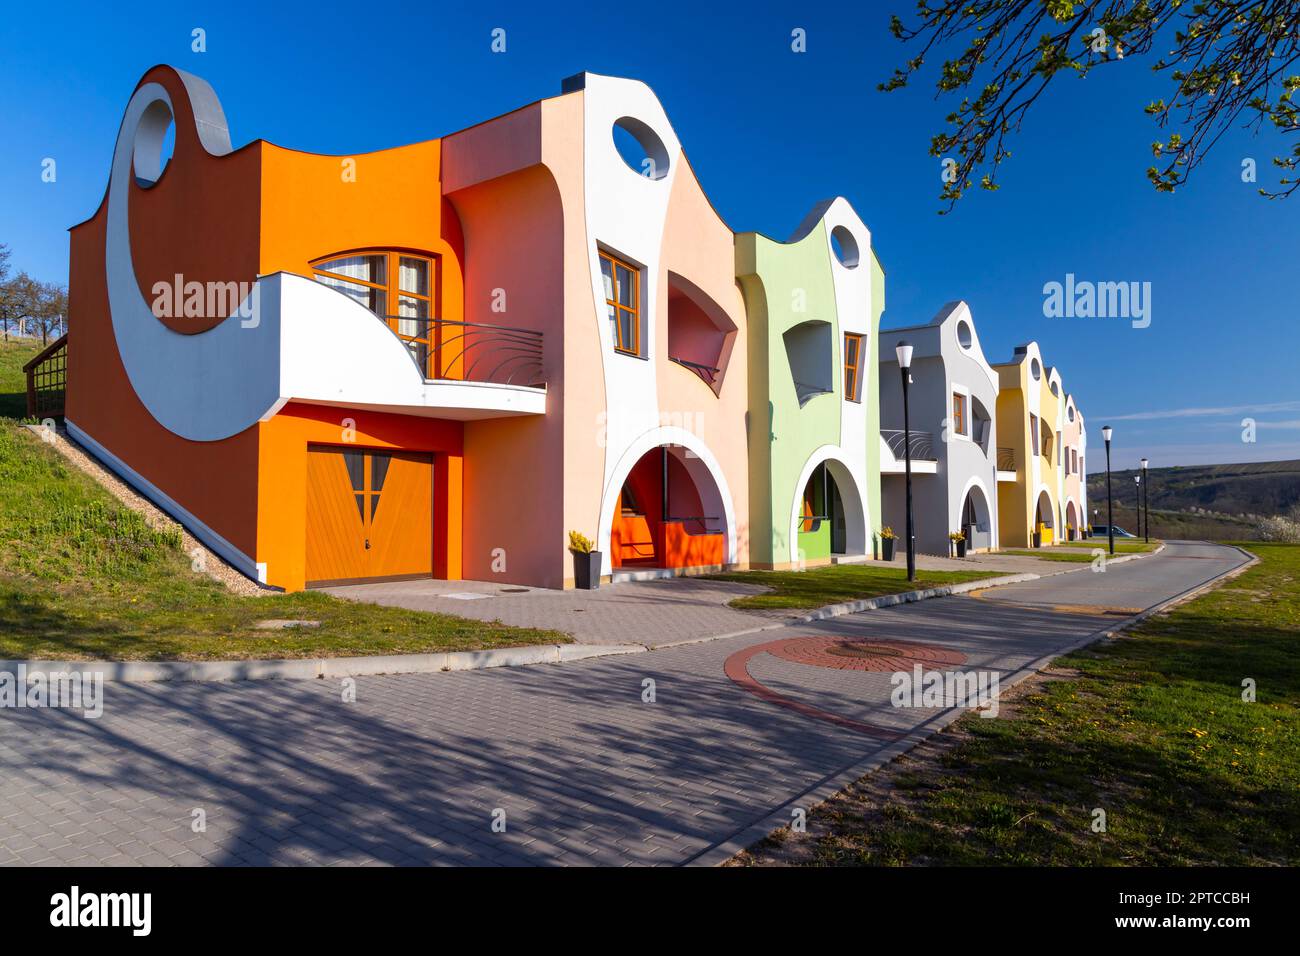 Modern architecture Opile sklepy in Velke Pavlovice, Southern Moravia, Czech Republic Stock Photo